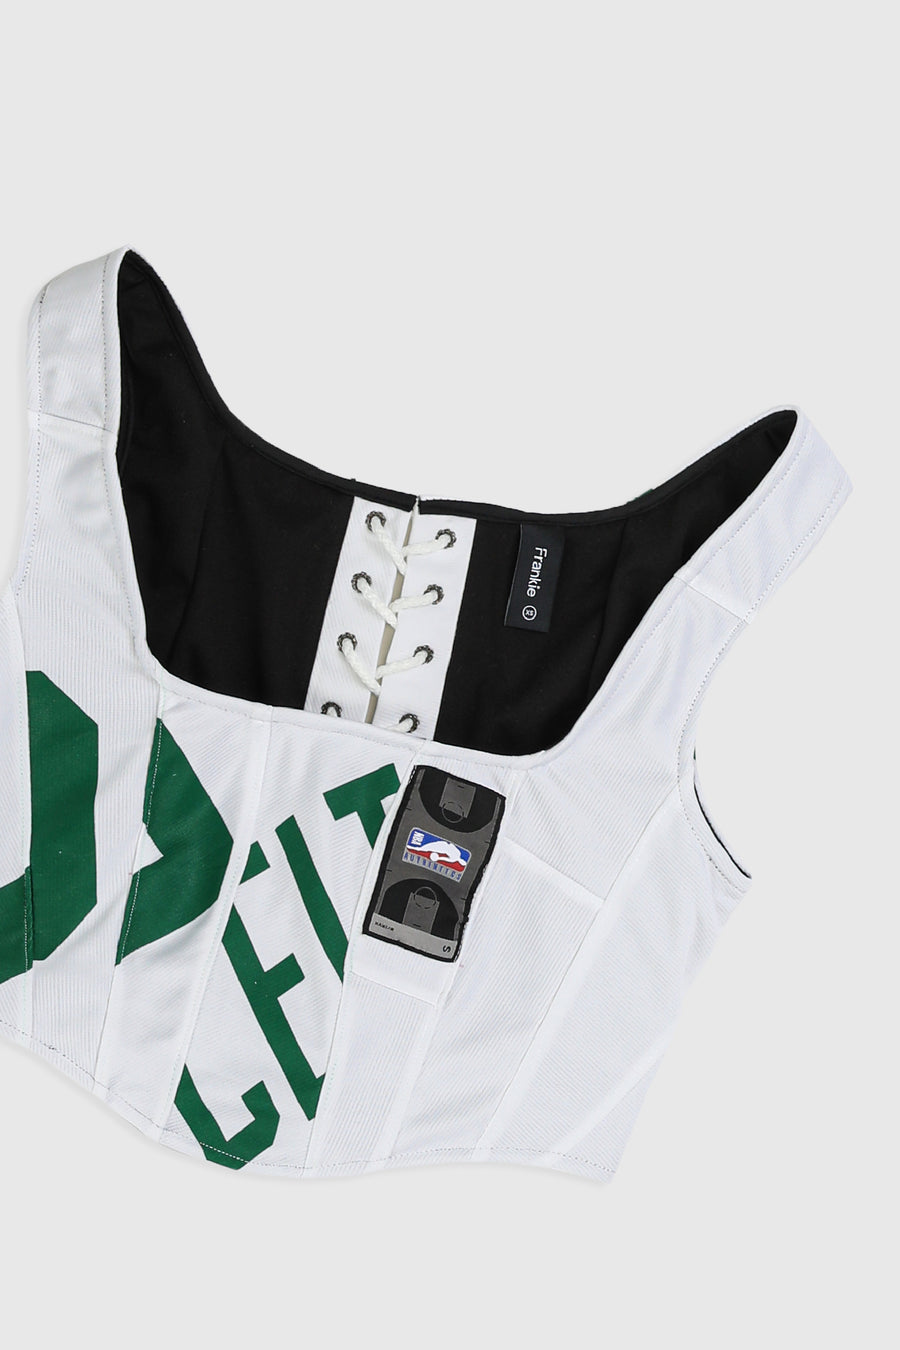 Rework Celtics NBA Jersey Corset - XS